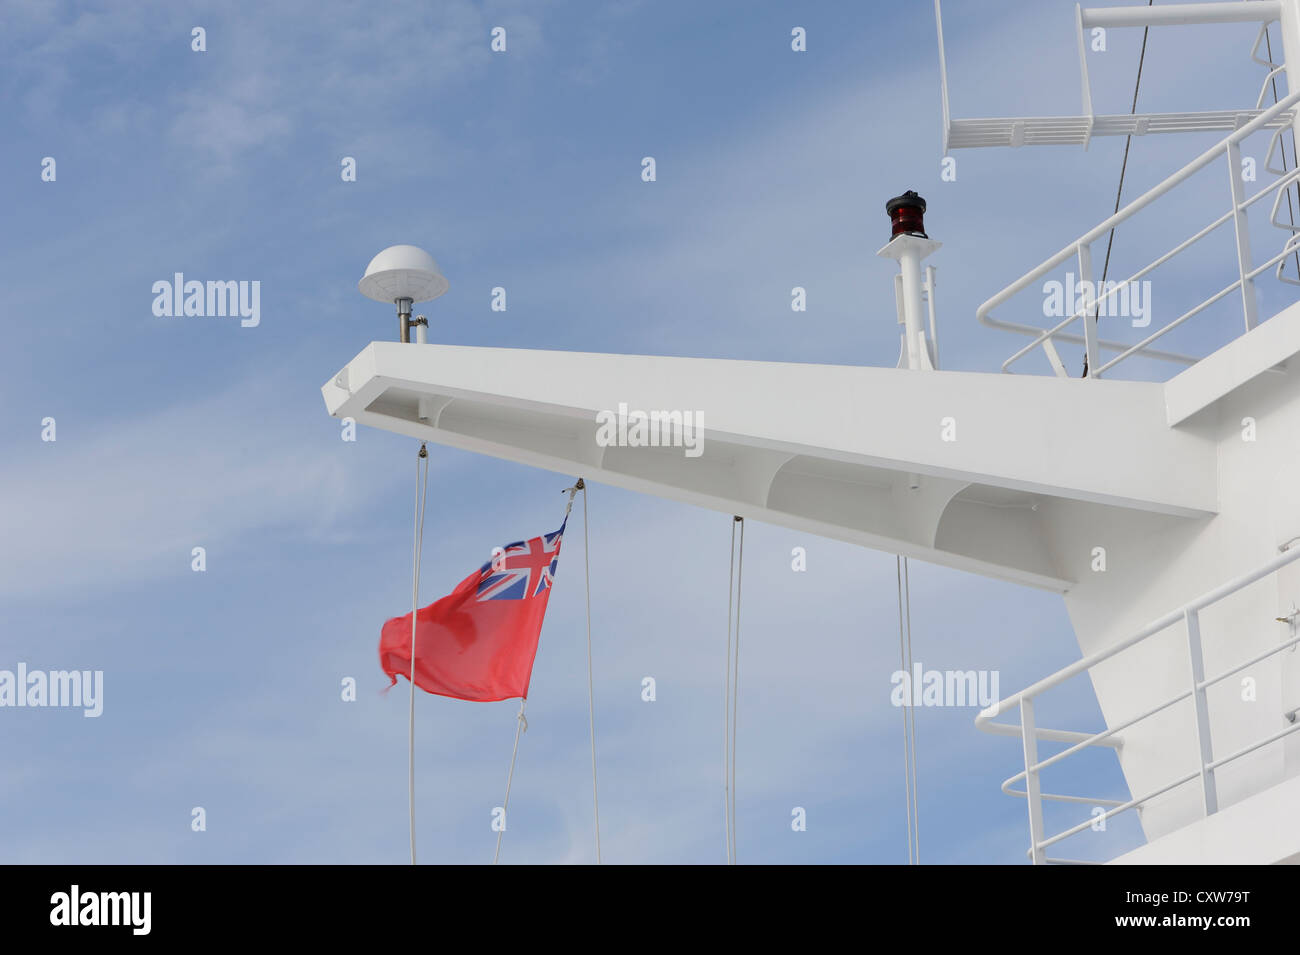 La superstructure d'un ferry battant un pavillon rouge. Golfe de Gascogne. 19Jun12 Banque D'Images